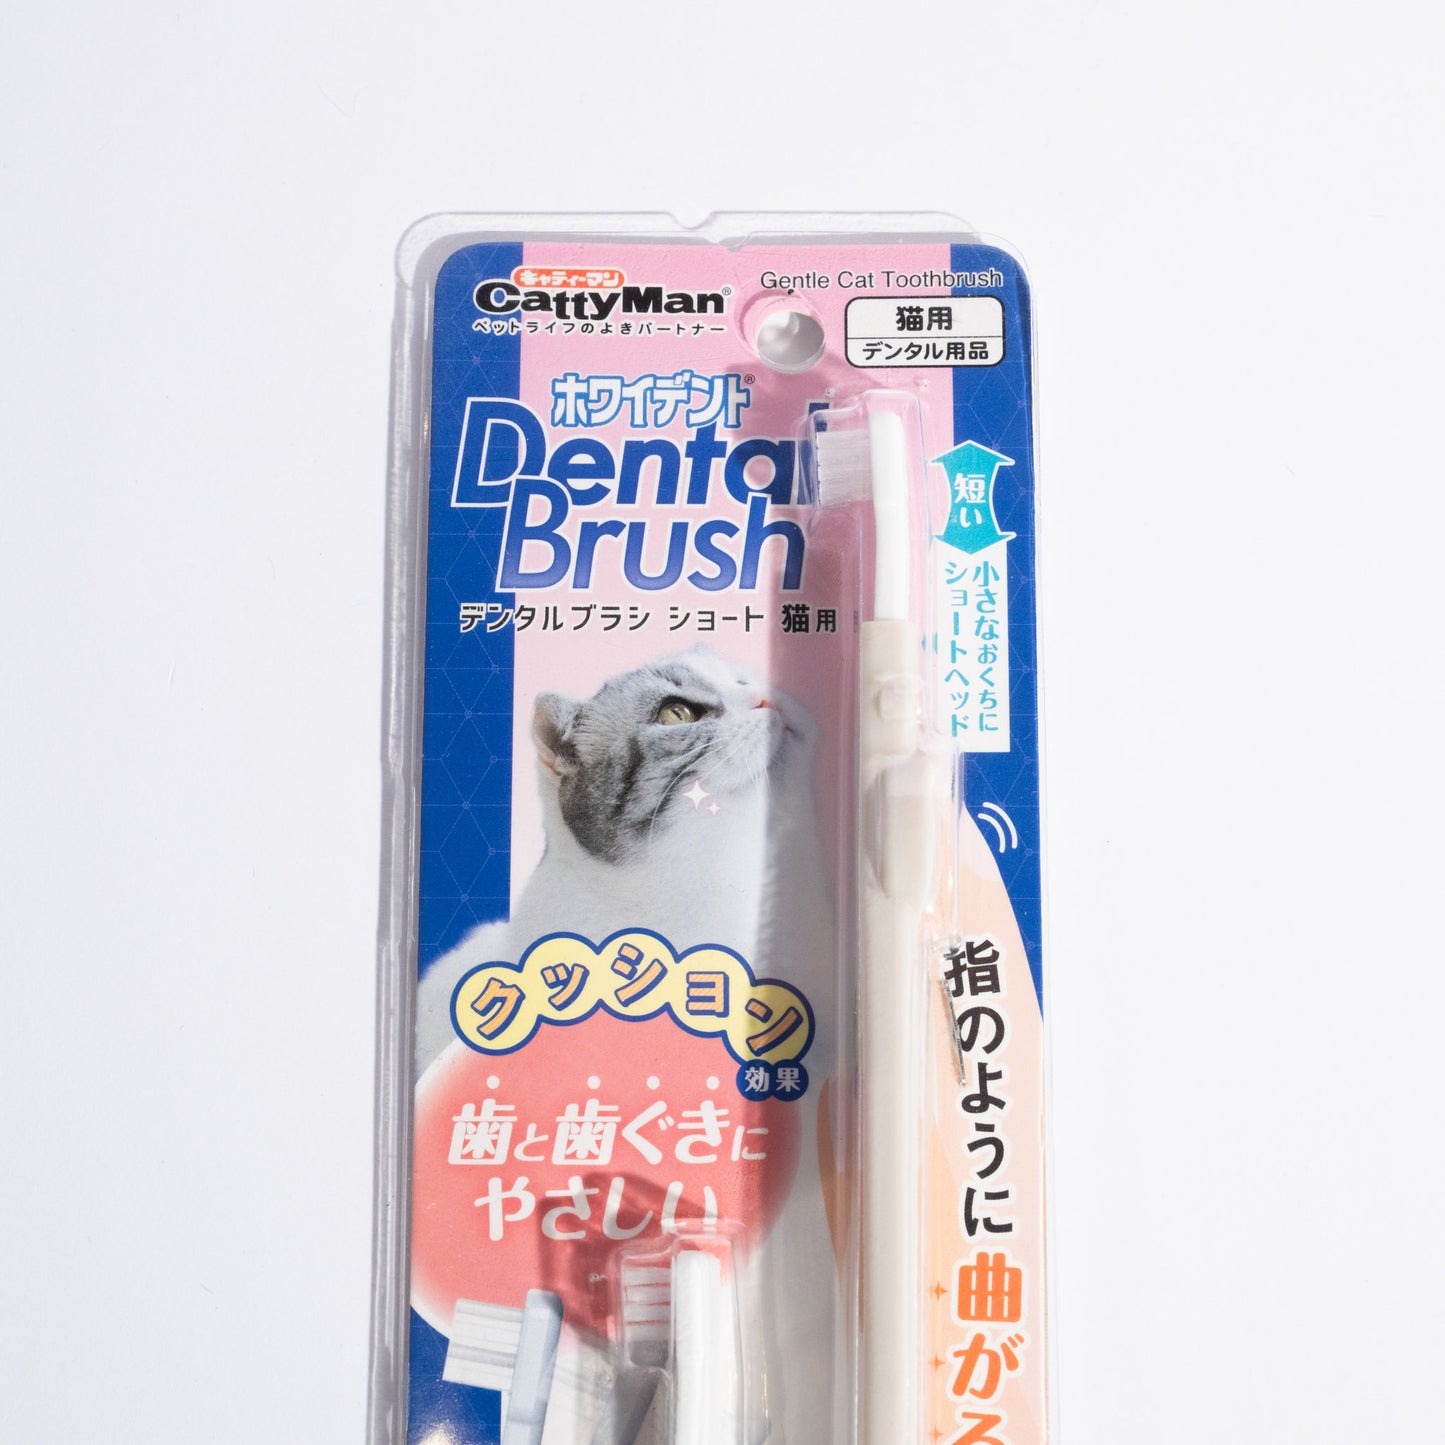 Japanese Cat Dental Tooth Brush